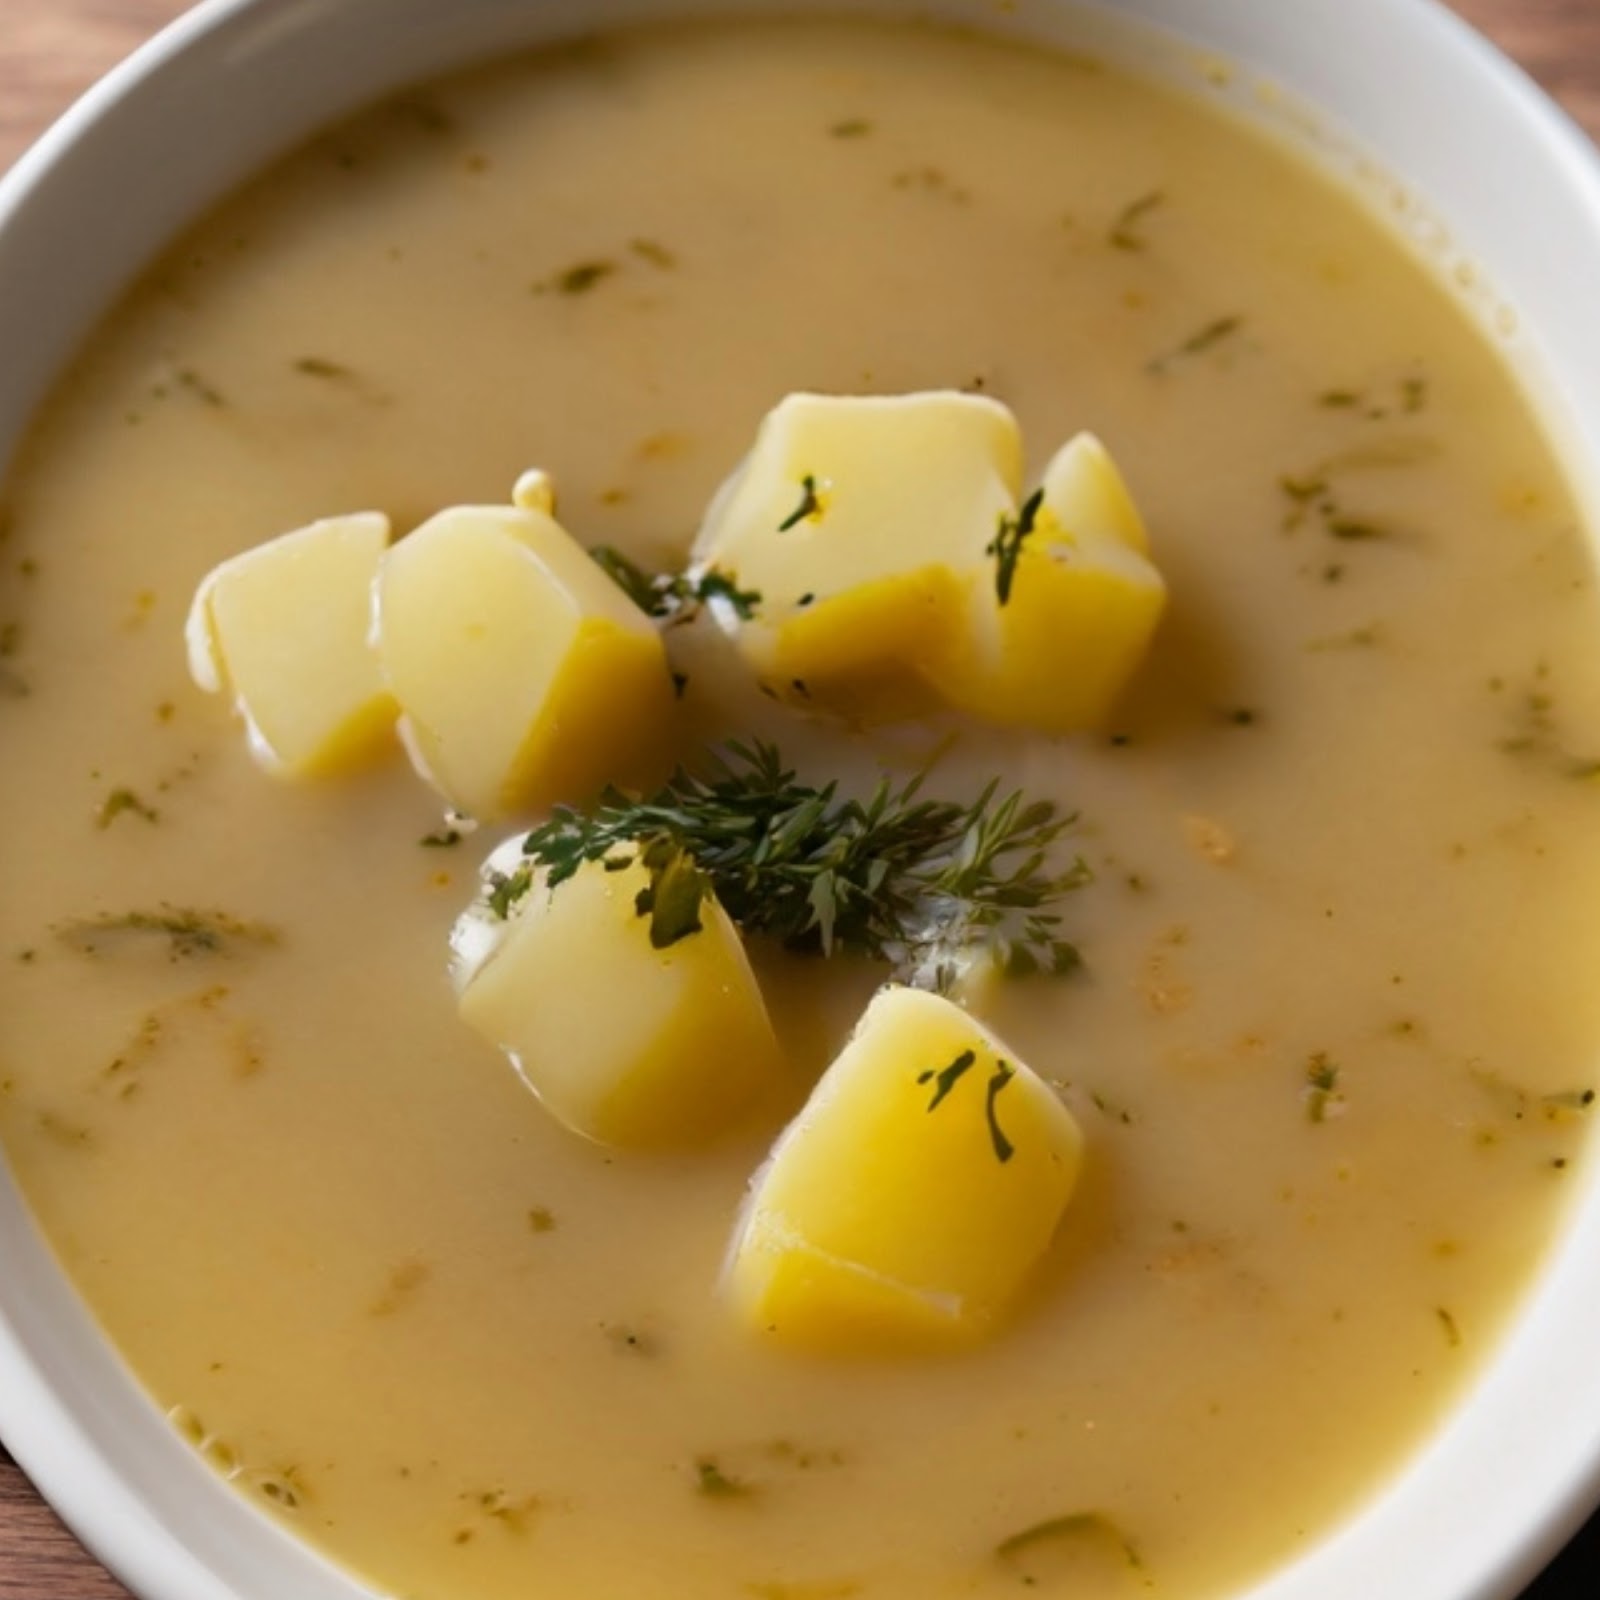 German Potato Soup recipe